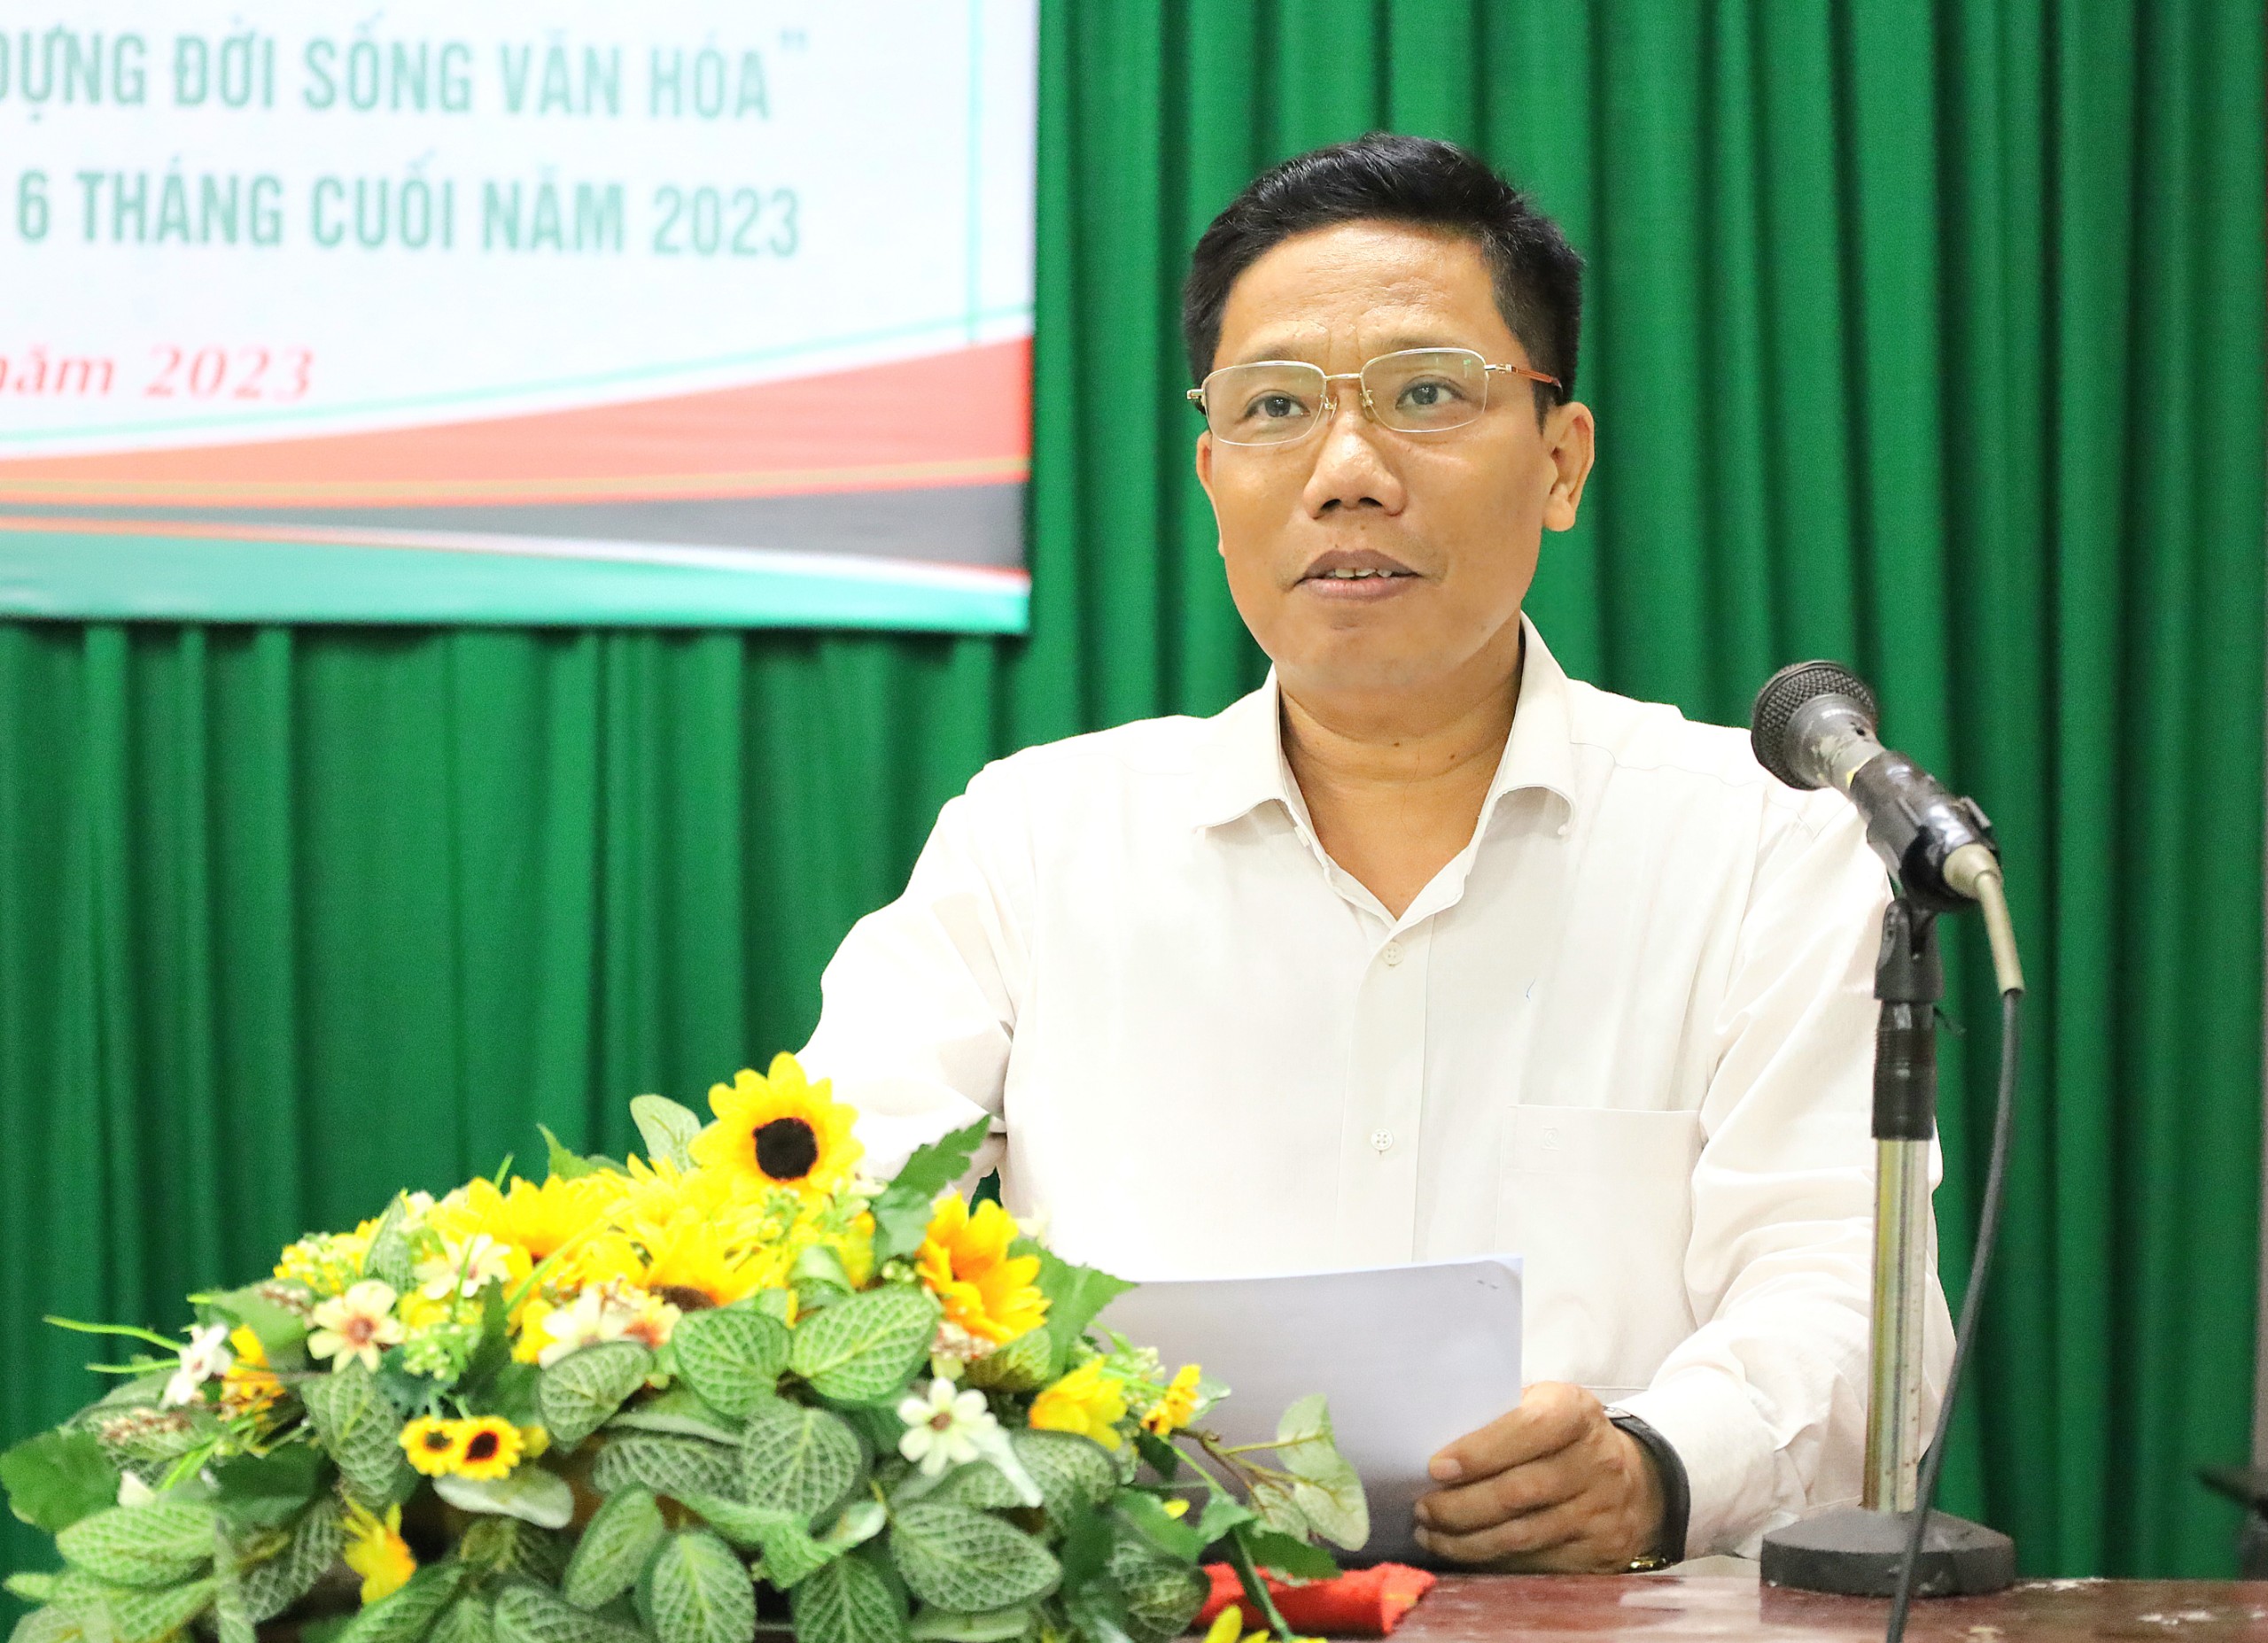 Ông Nguyễn Thực Hiện - Phó Chủ tịch UBND TP. Cần Thơ phát biểu chỉ đạo tại hội nghị.